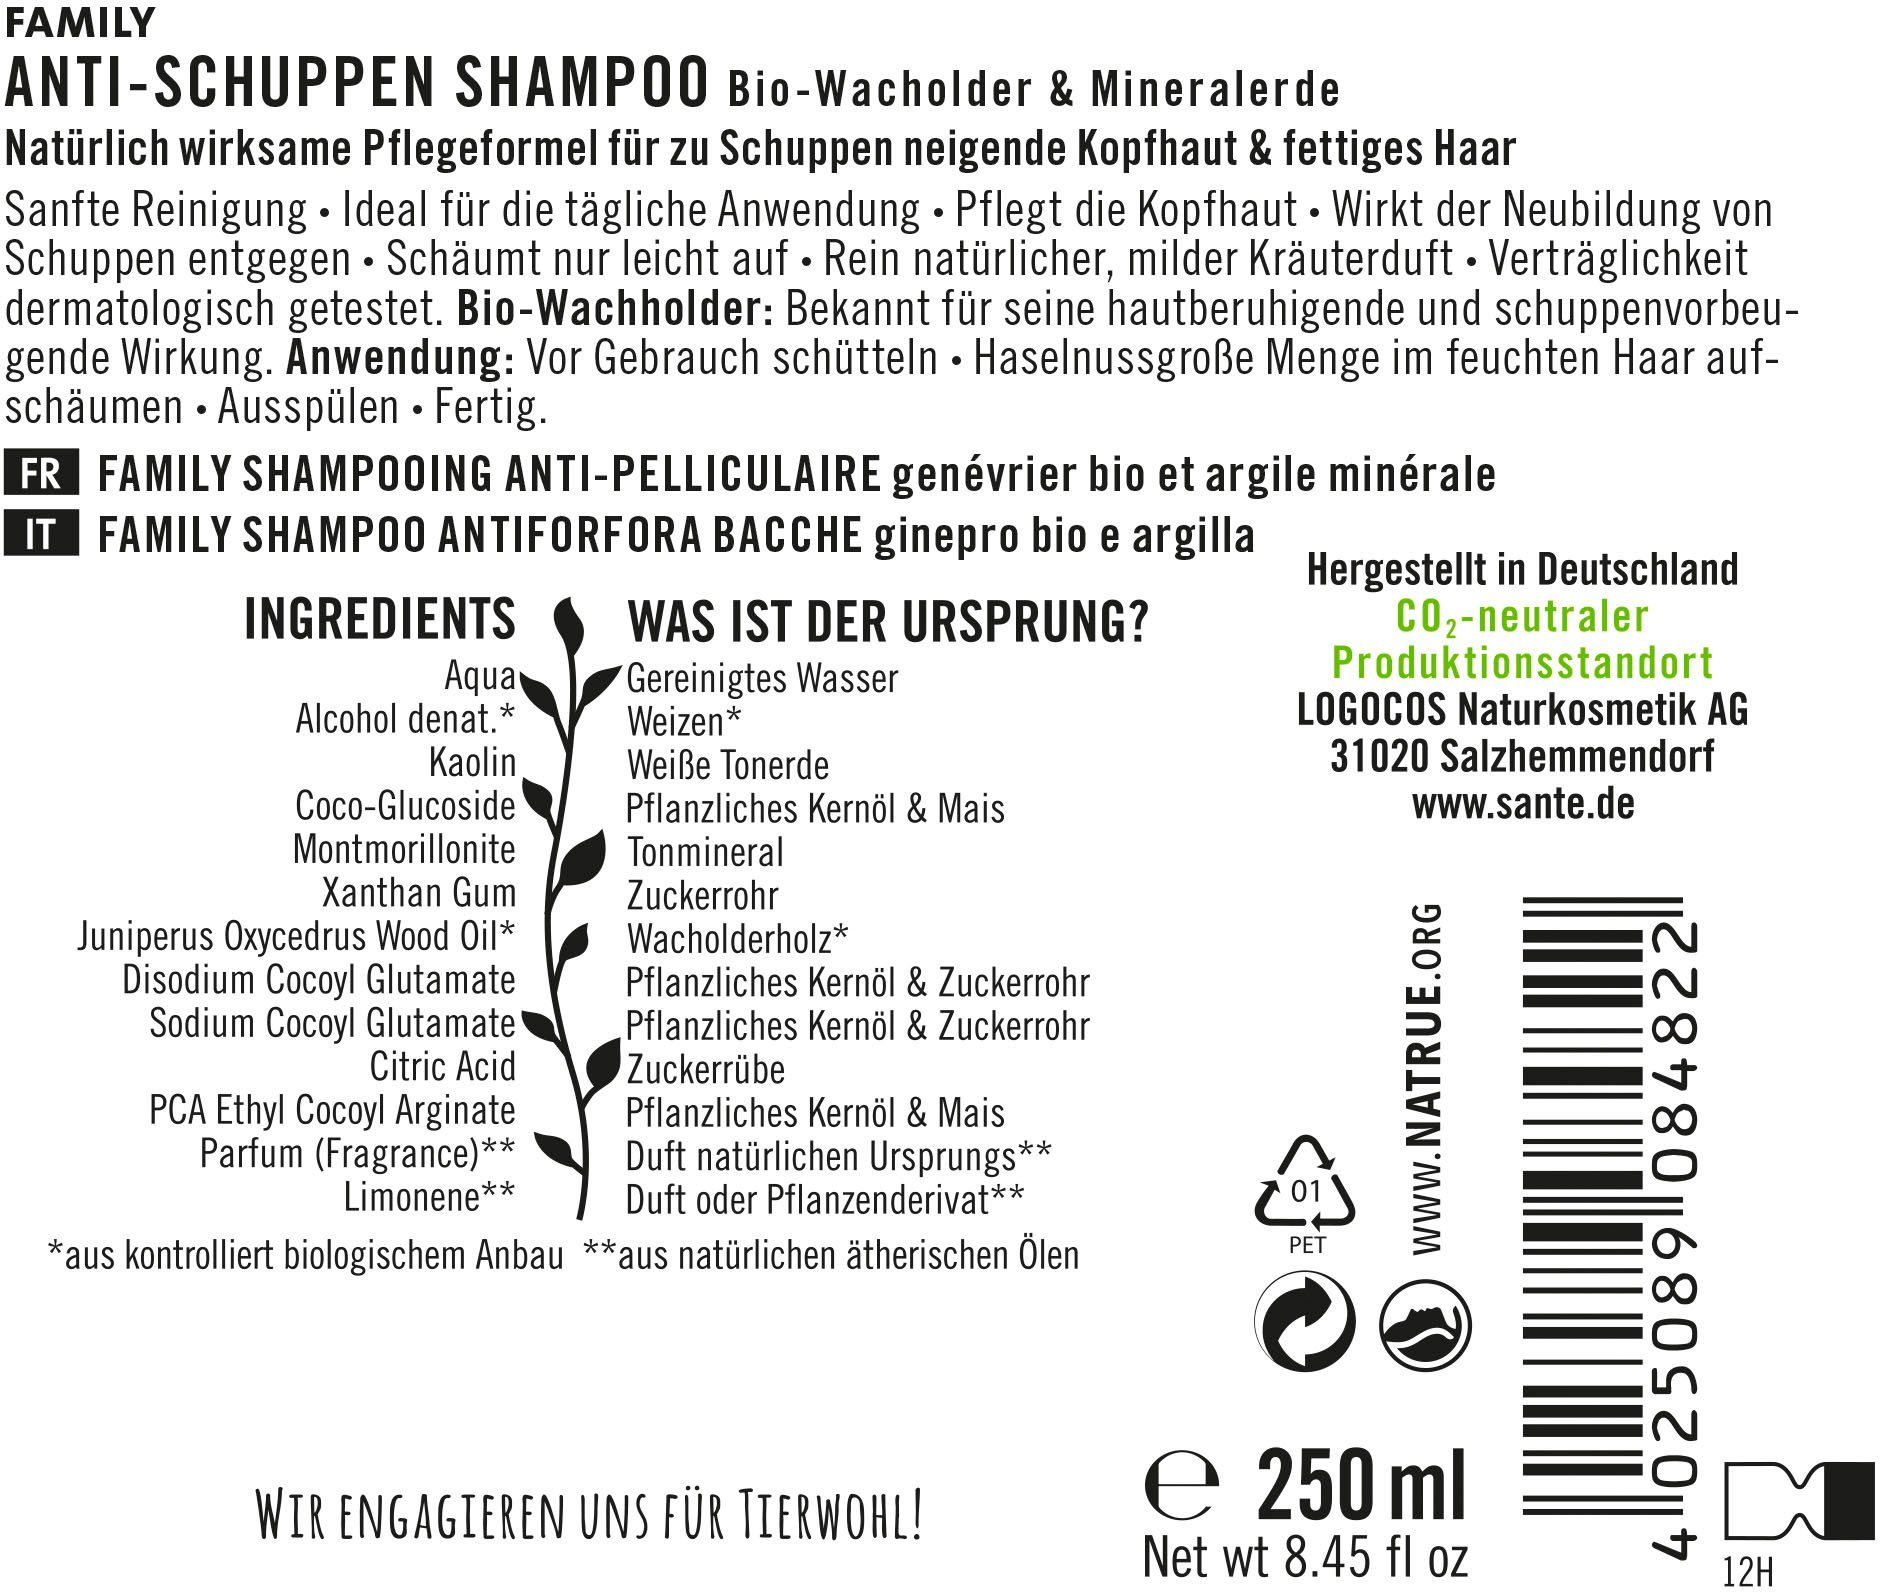 Anti-Schuppen Haarshampoo FAMILY SANTE Shampoo